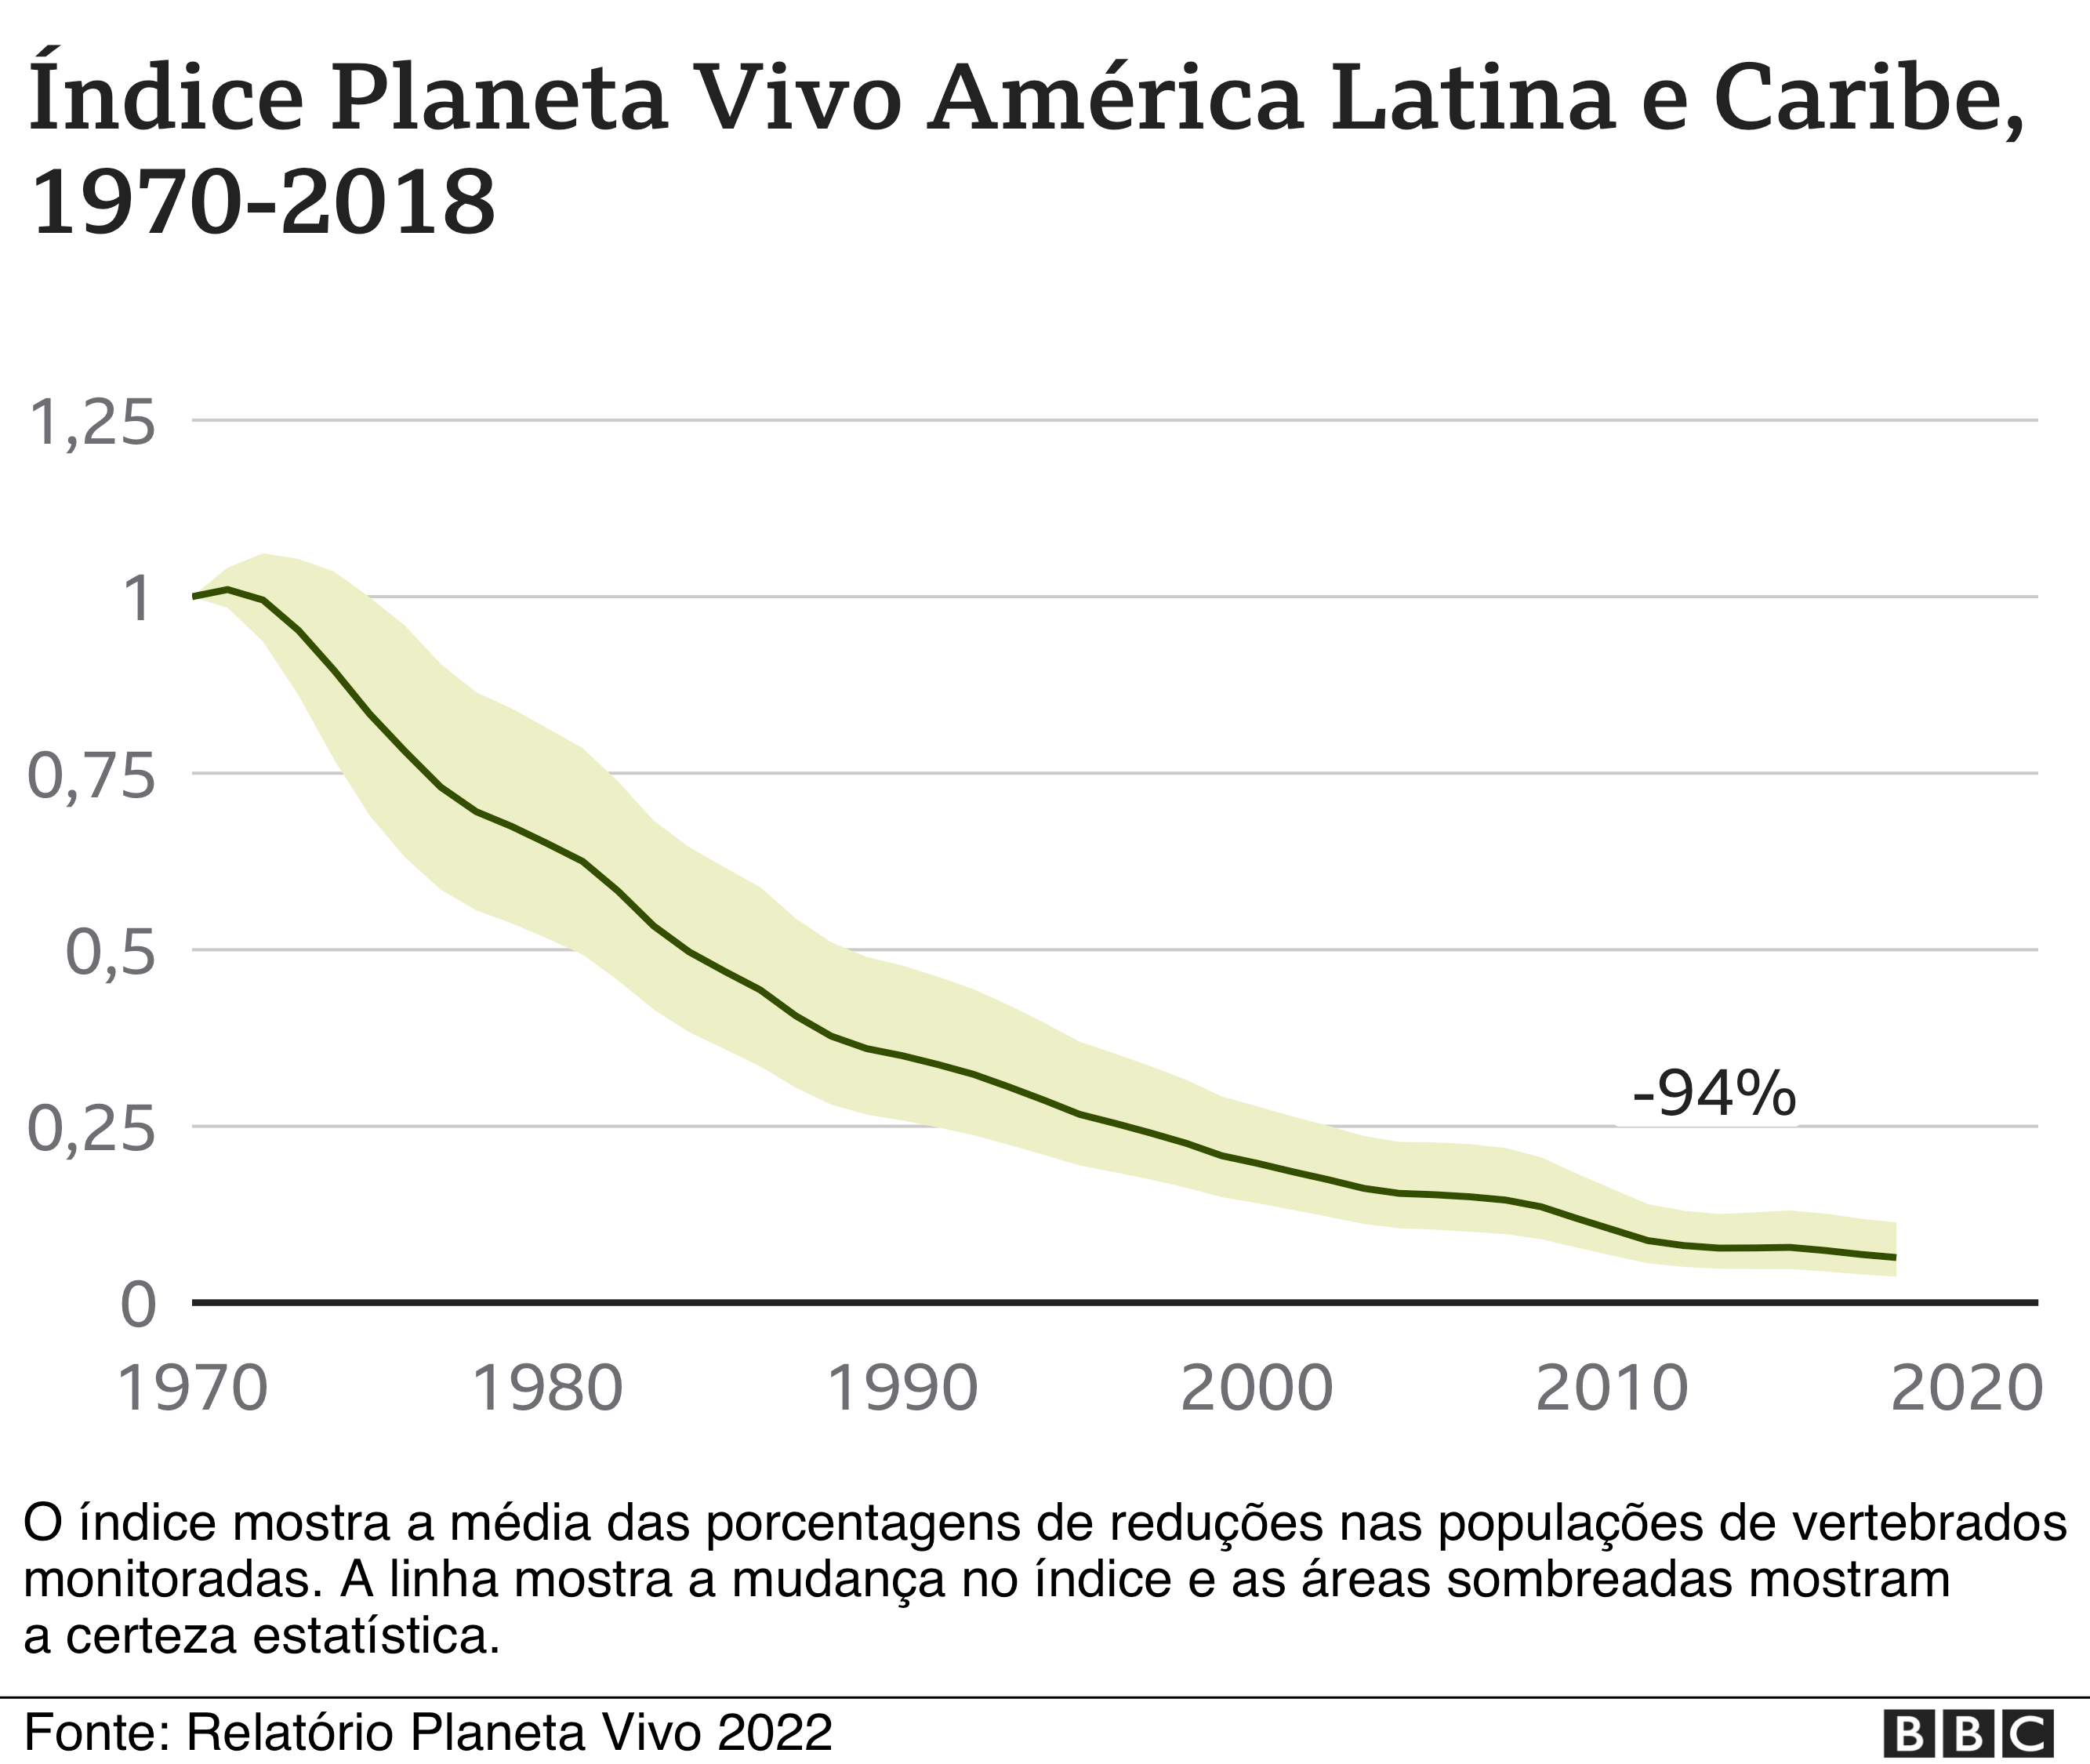 Gráfico do Relatório Planeta Vivo mostrando a redução de animais na América Latina e no Caribe.